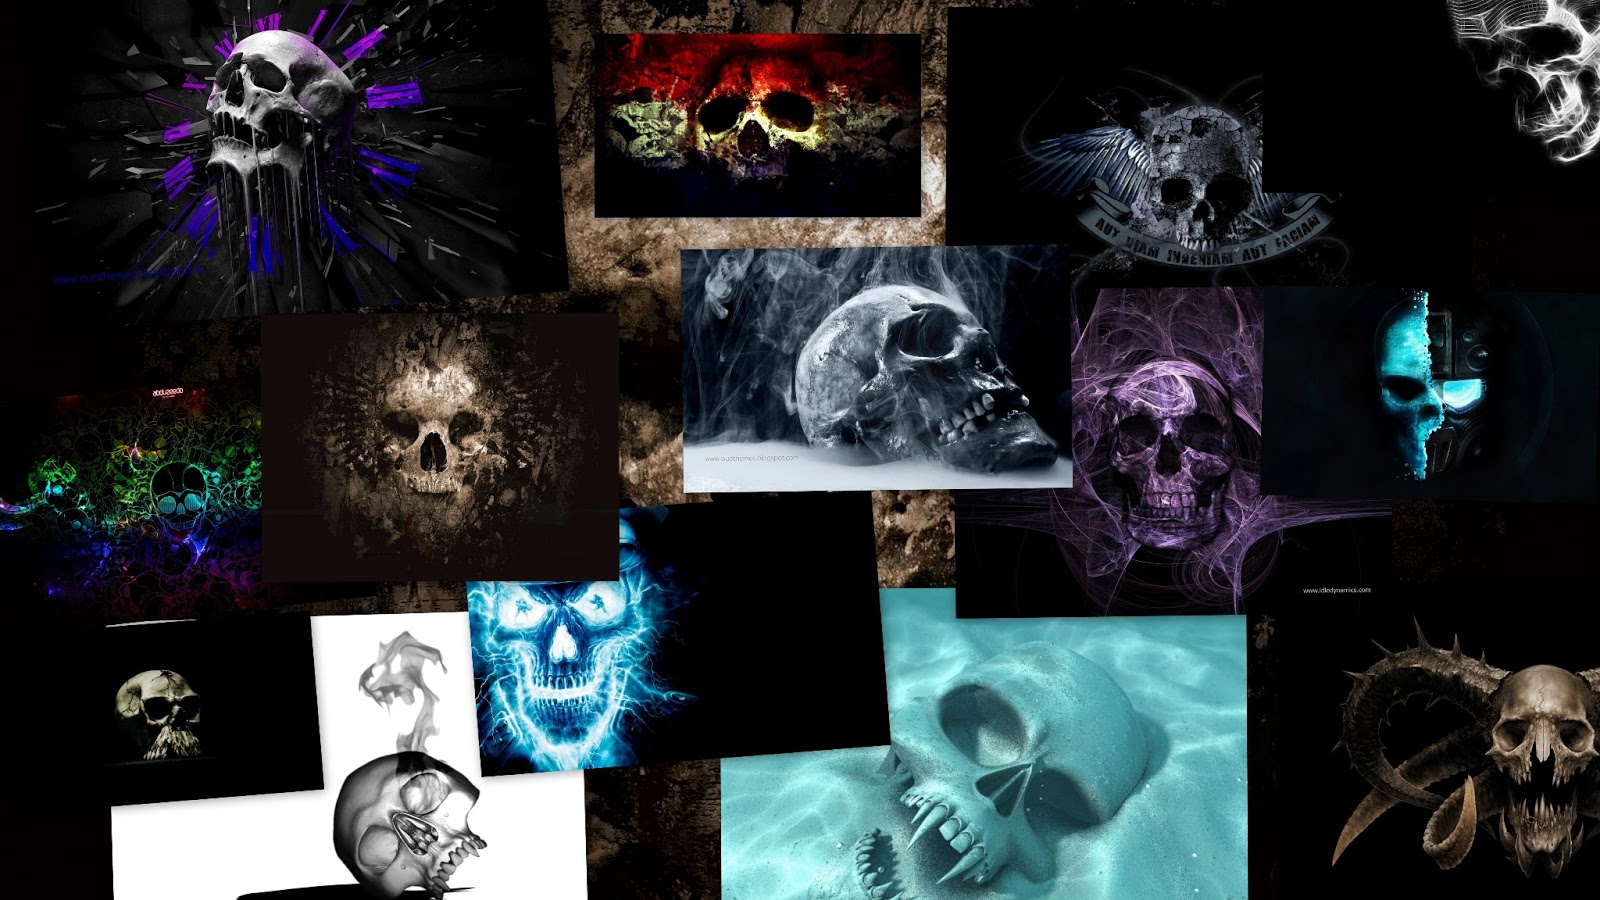 Skull Ghost Twilight Pumpkin iPad 4 Wallpaper - HD Wallpapers ...